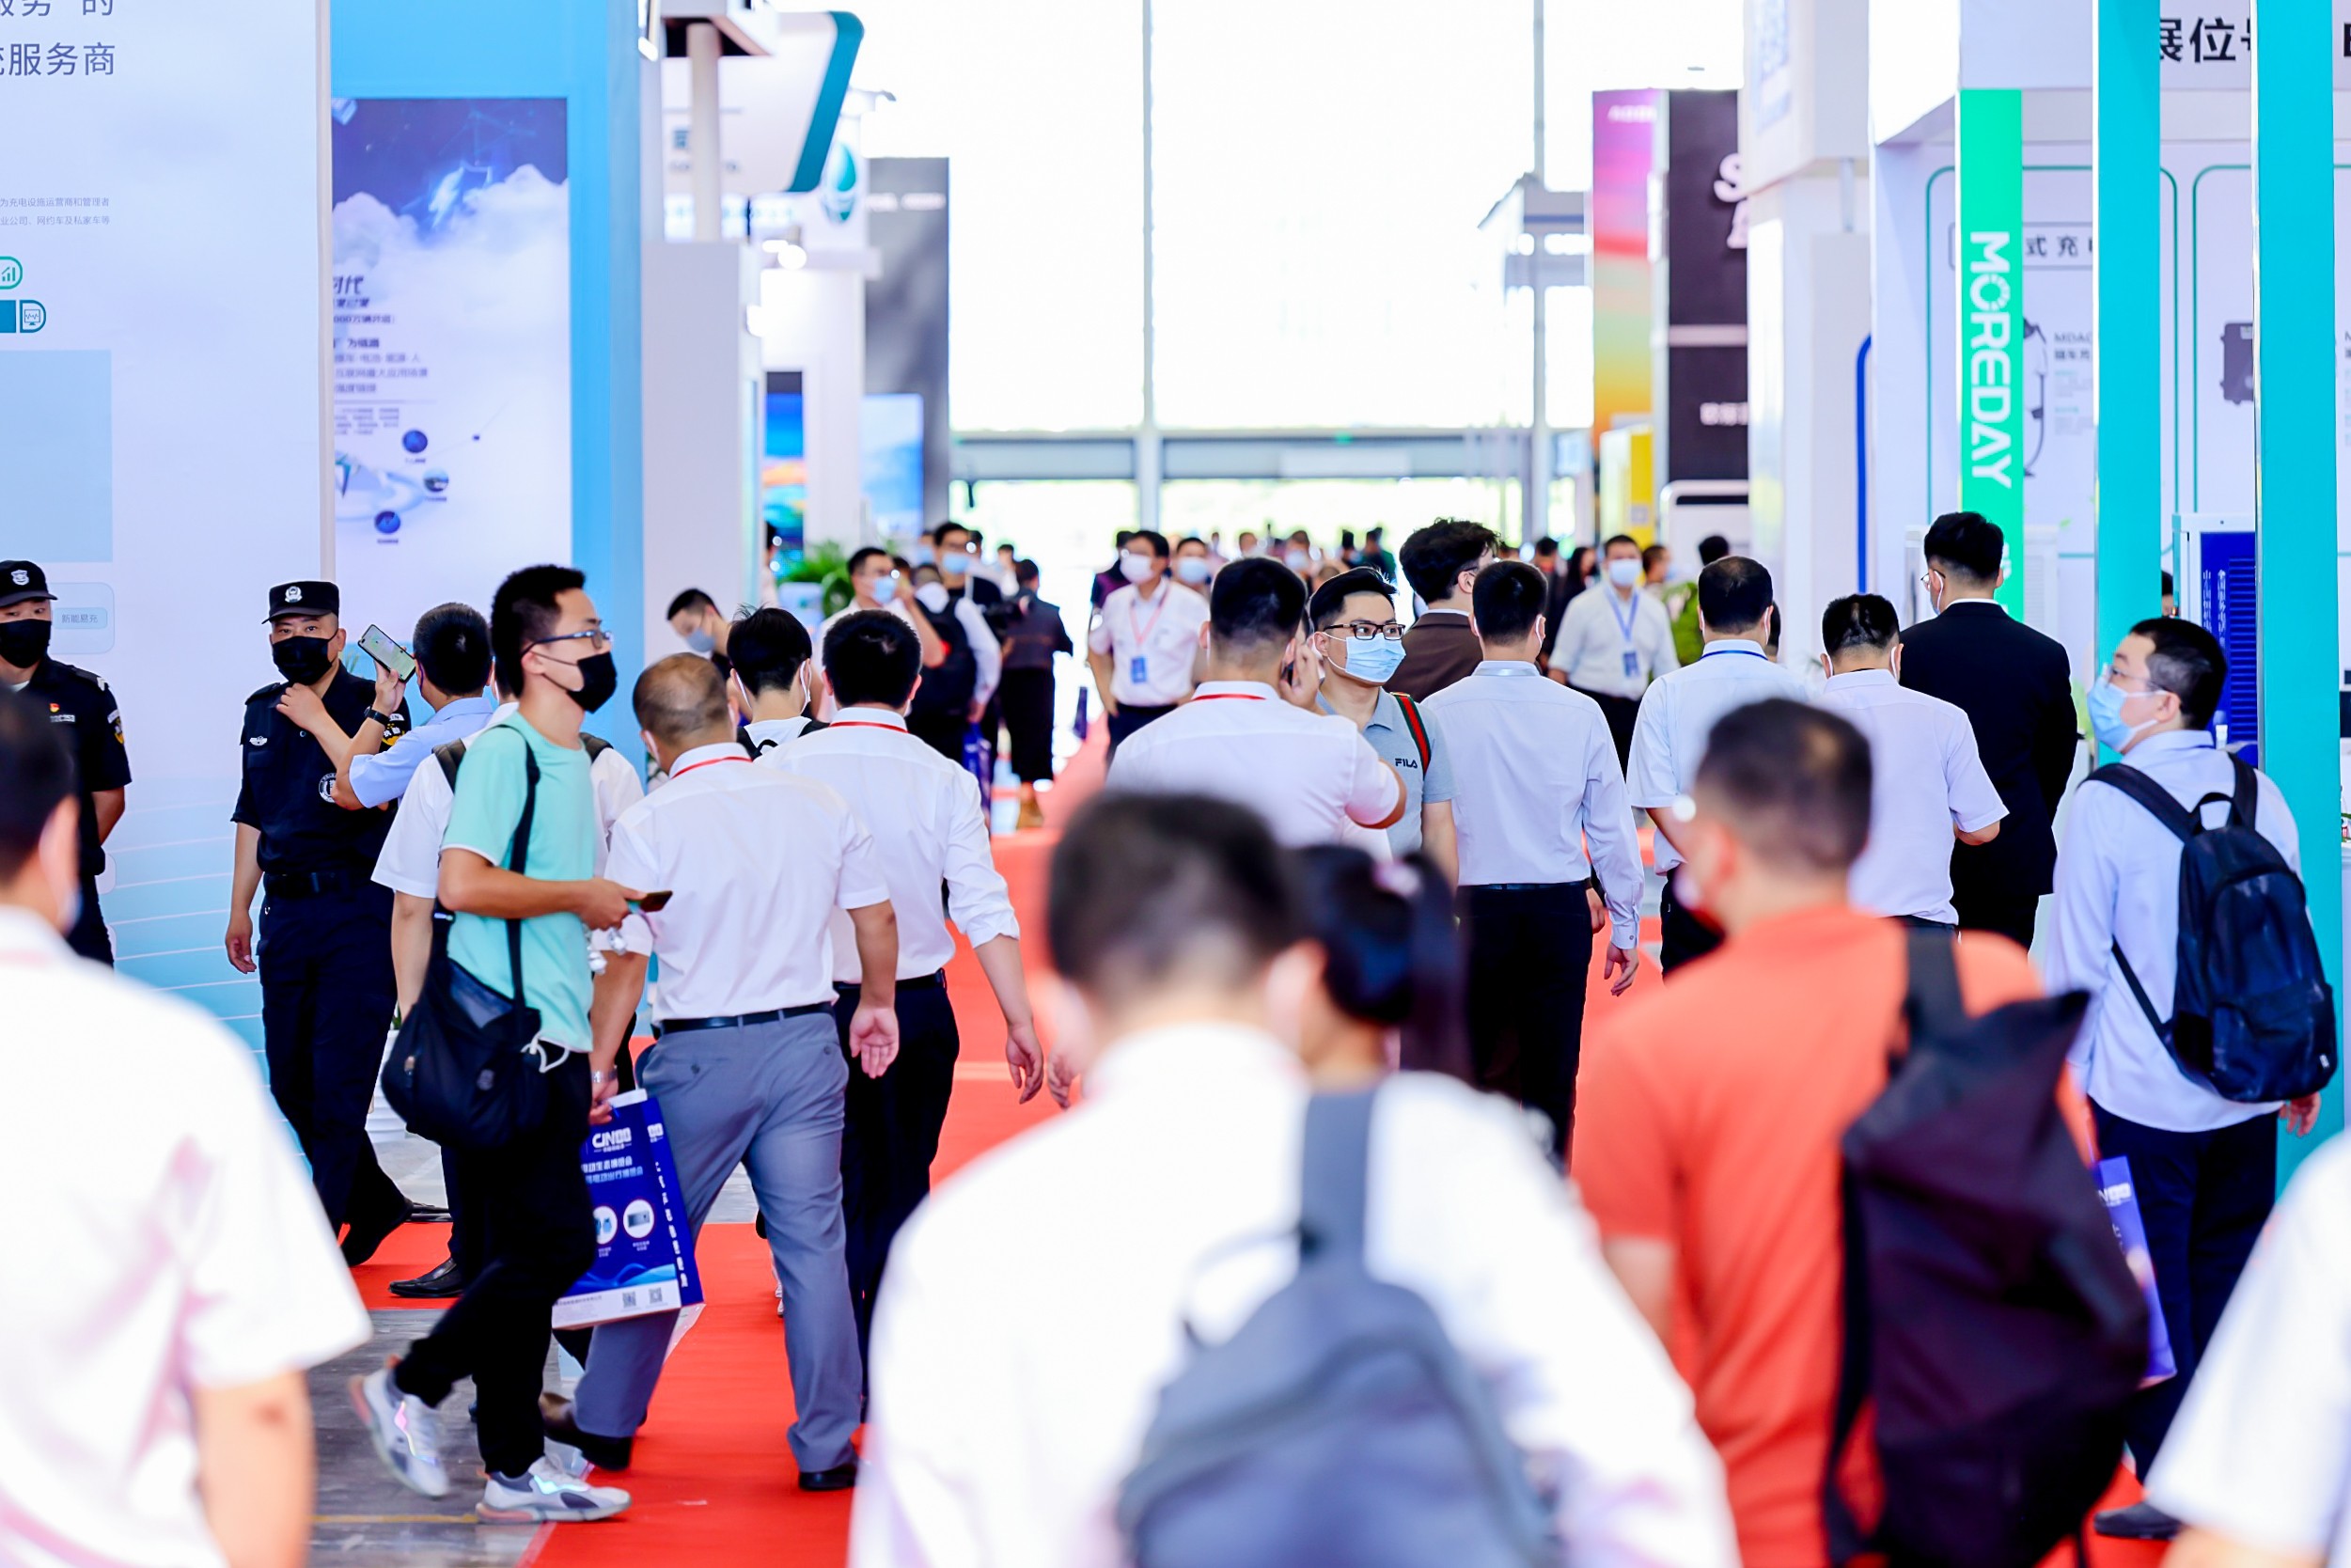 2023充电桩展|第七届国网电动出行博览会&中国电动生态大会 全面启动9月6-8日南京见